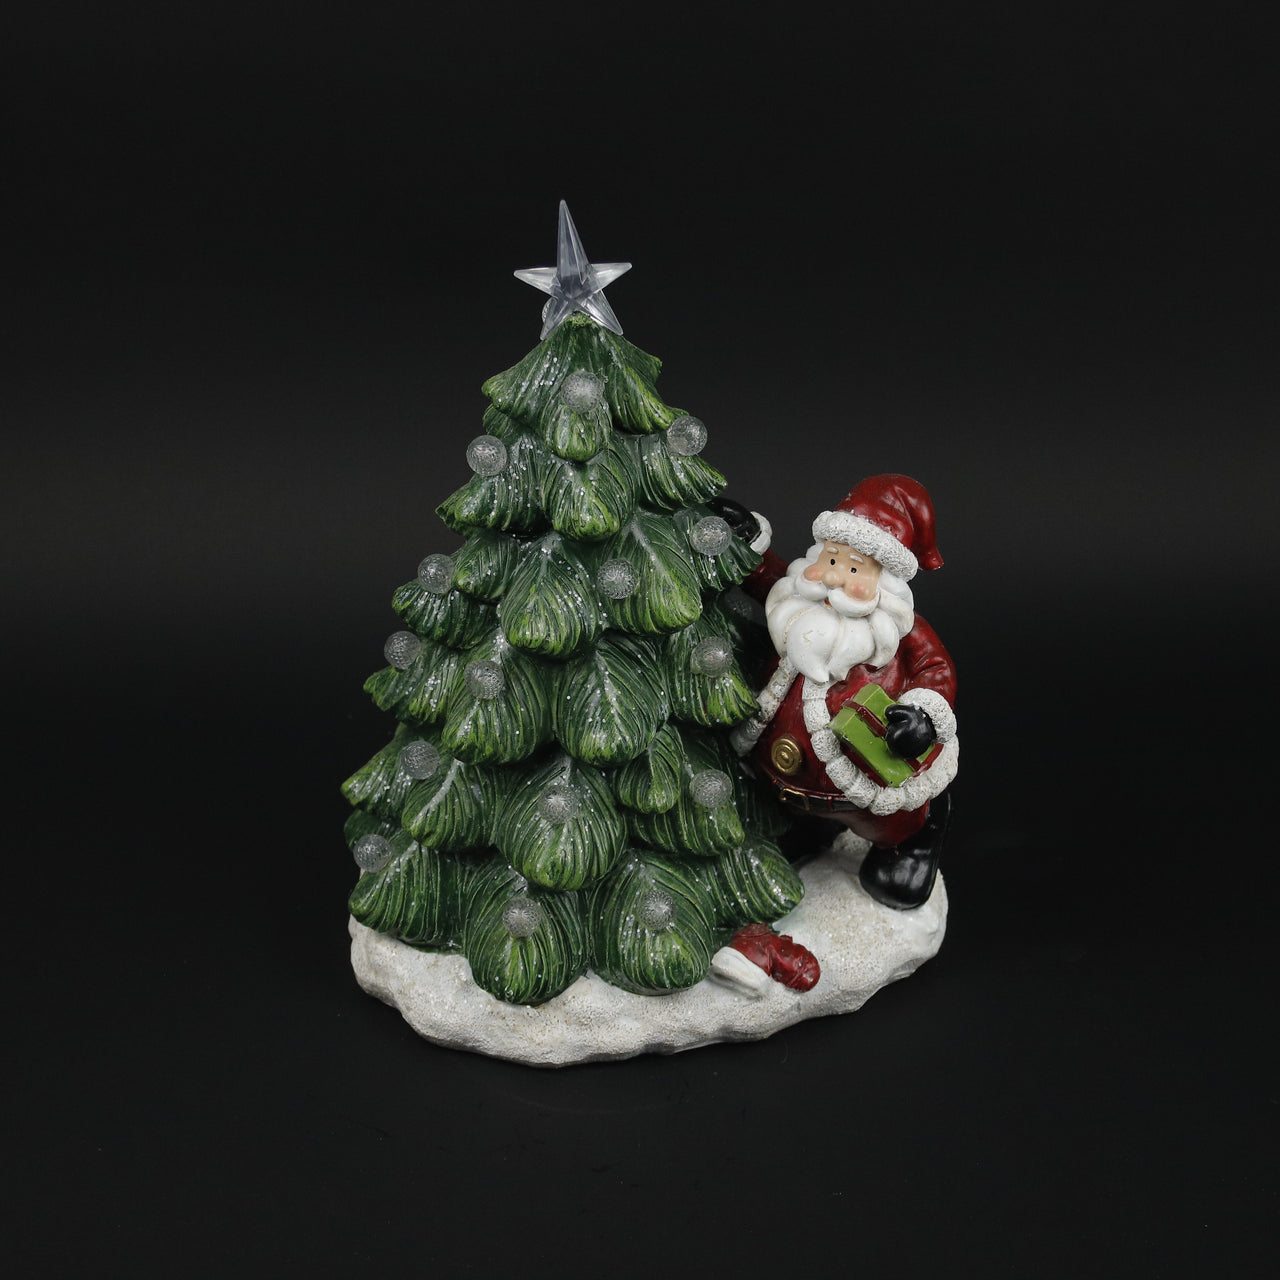 HCHD9289 - Ceramic Santa Tree